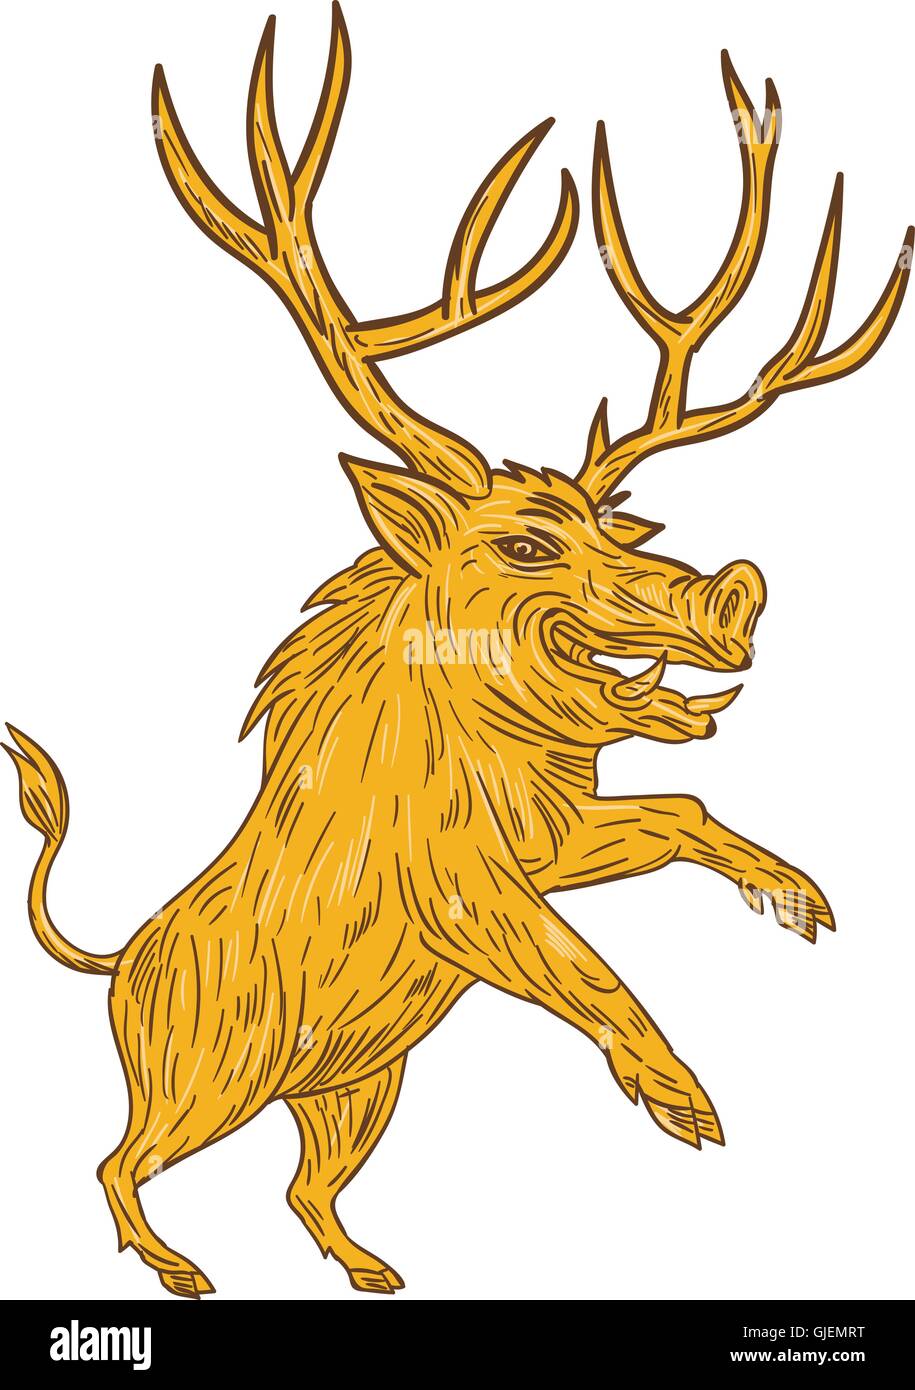 Style croquis dessin illustration d'un cochon sauvage sanglier razorback avec bois prancing vu du côté situé sur blanc isolé Illustration de Vecteur